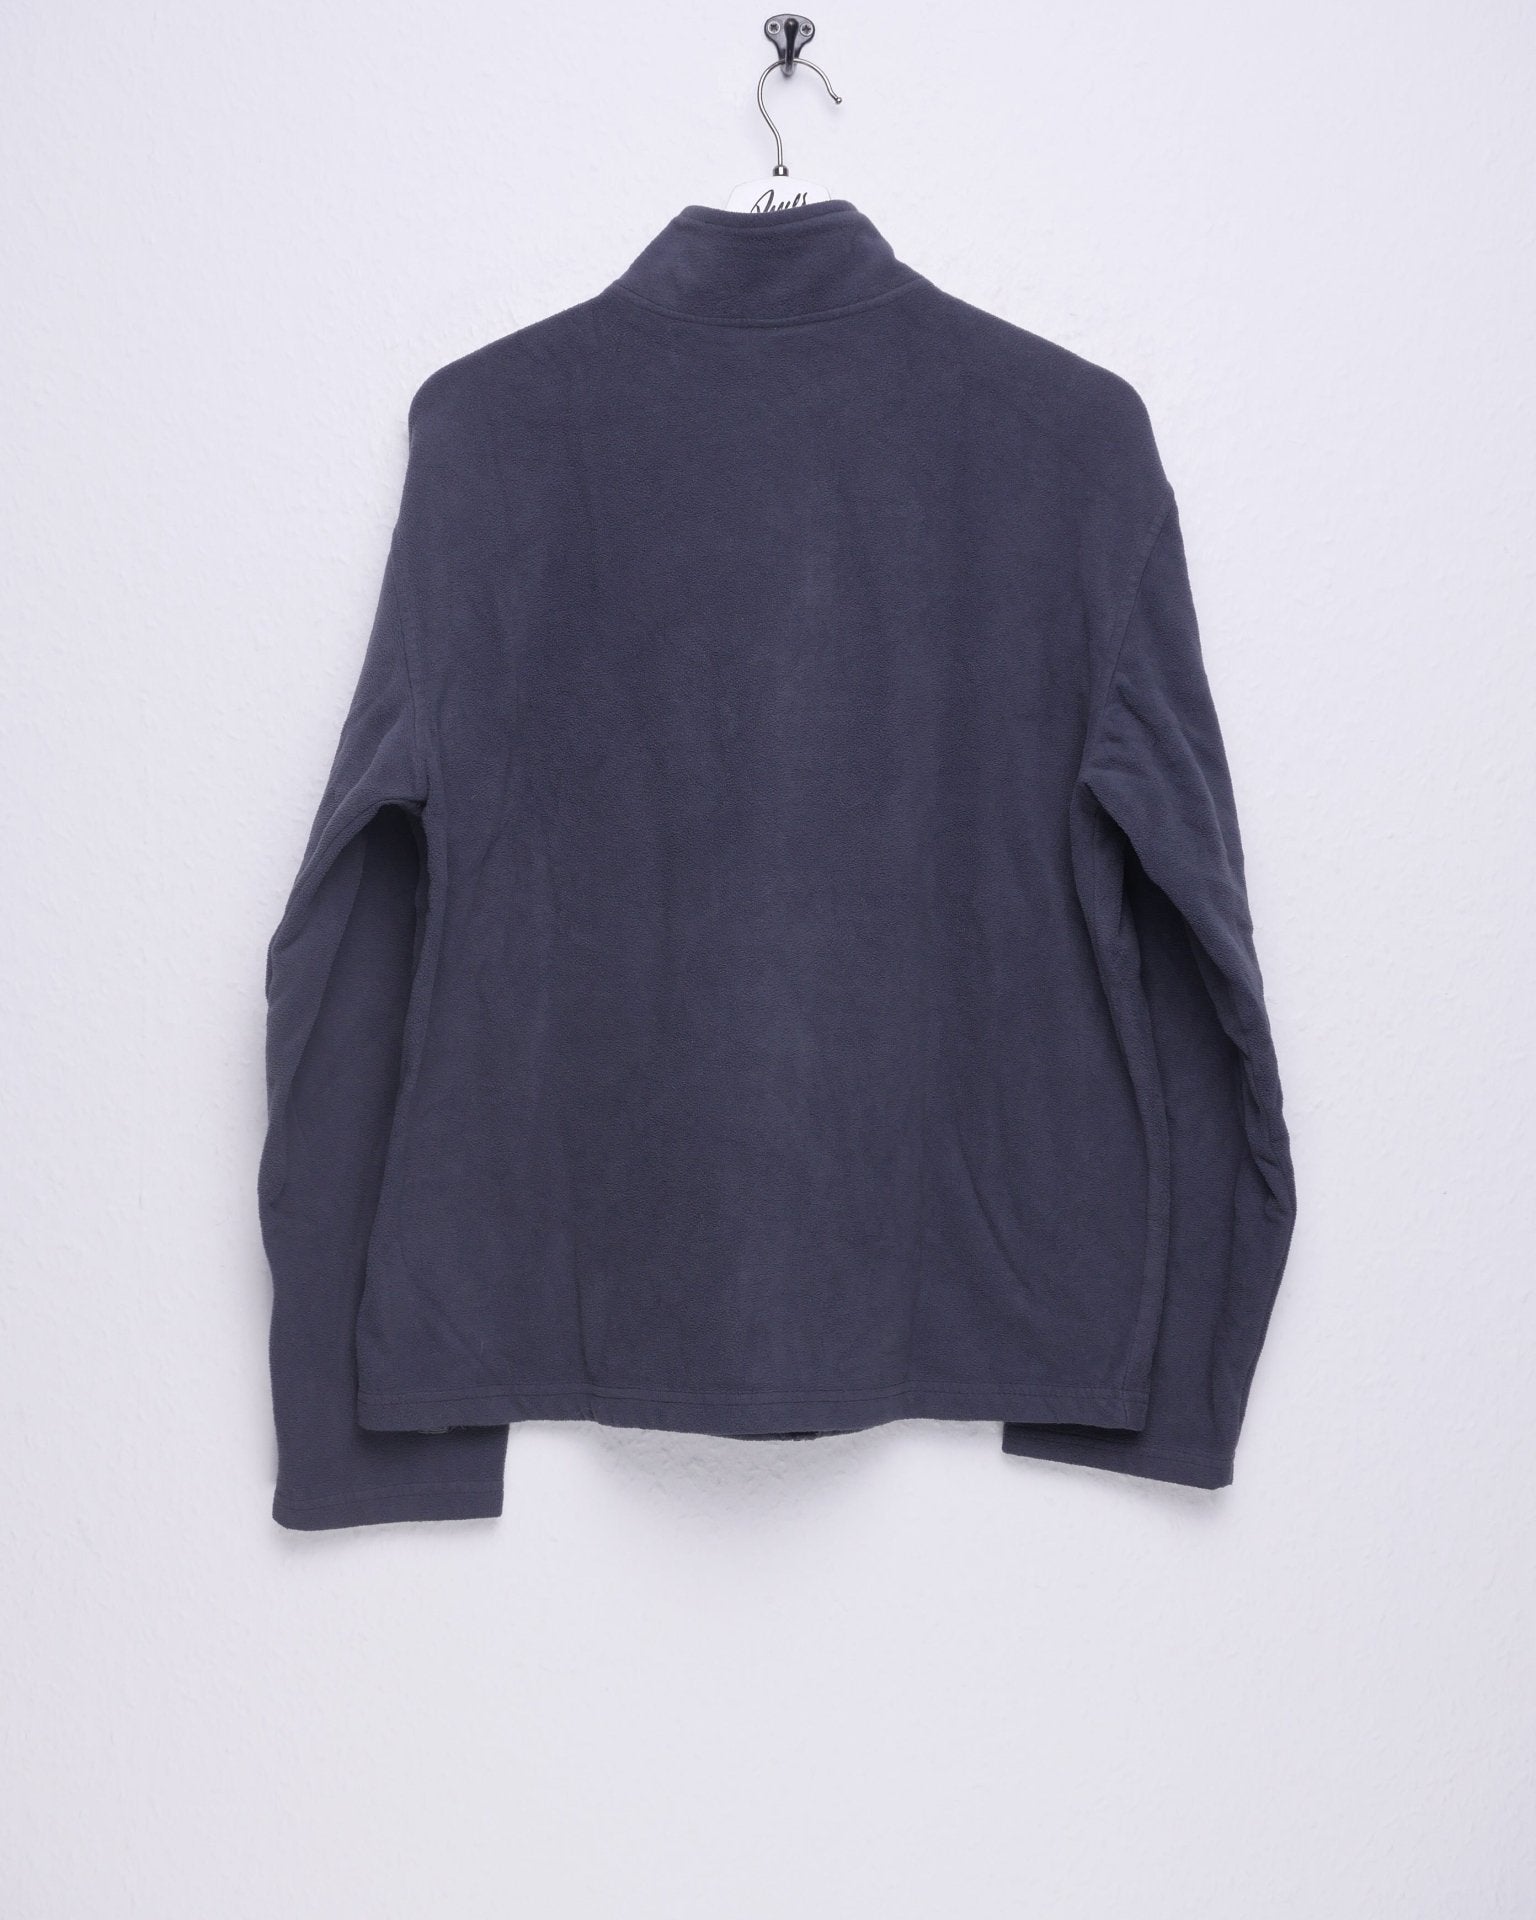 Starter embroidered Logo dark grey Fleece Zip Sweater - Peeces